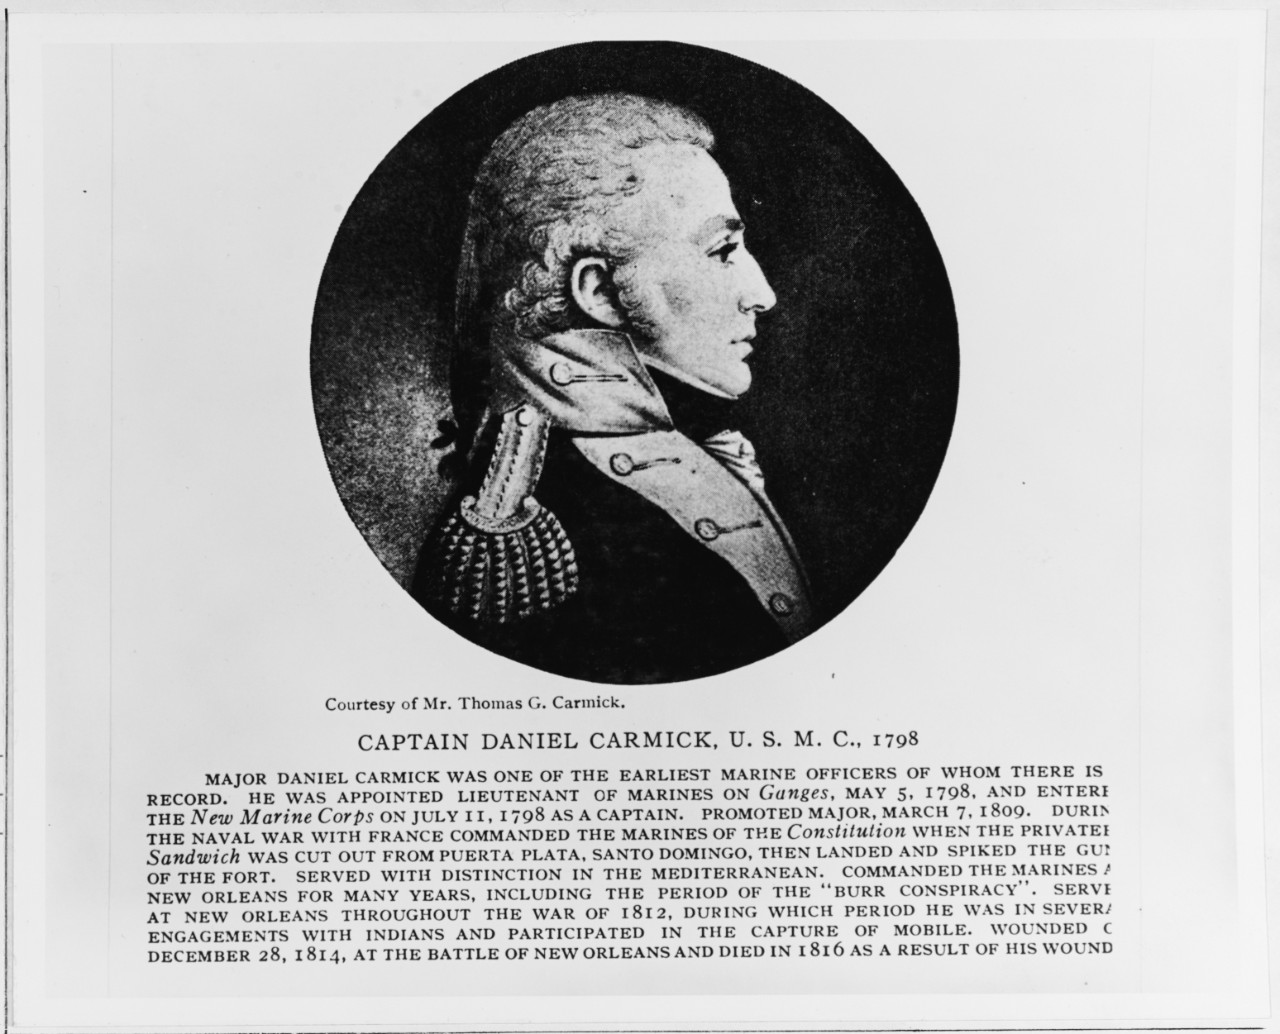 Captain Daniel Carmick, USMC, 1798